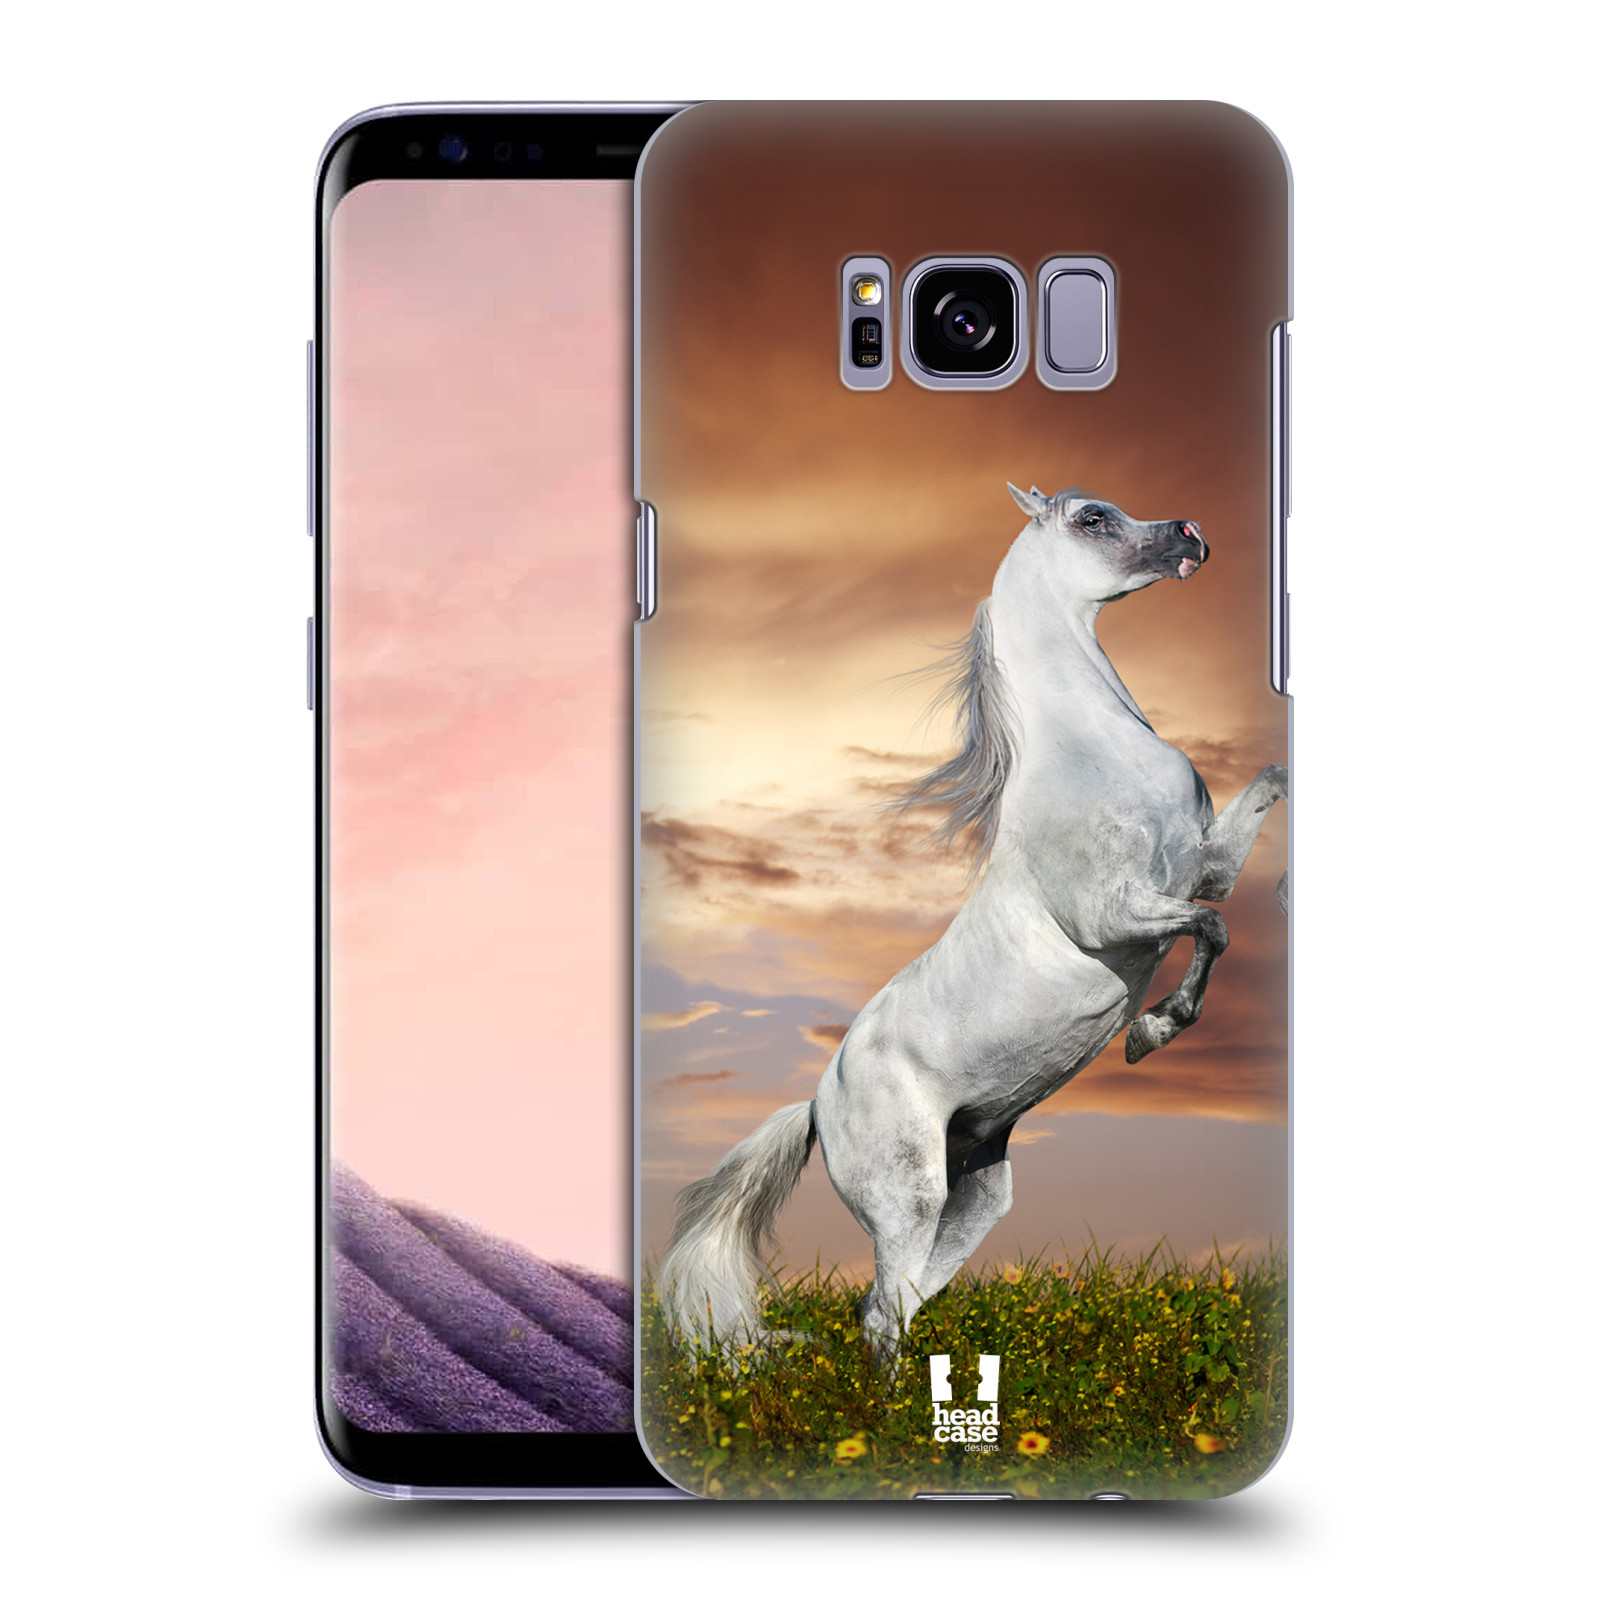 Zadní obal pro mobil Samsung Galaxy S8 PLUS - HEAD CASE - Svět zvířat divoký kůň